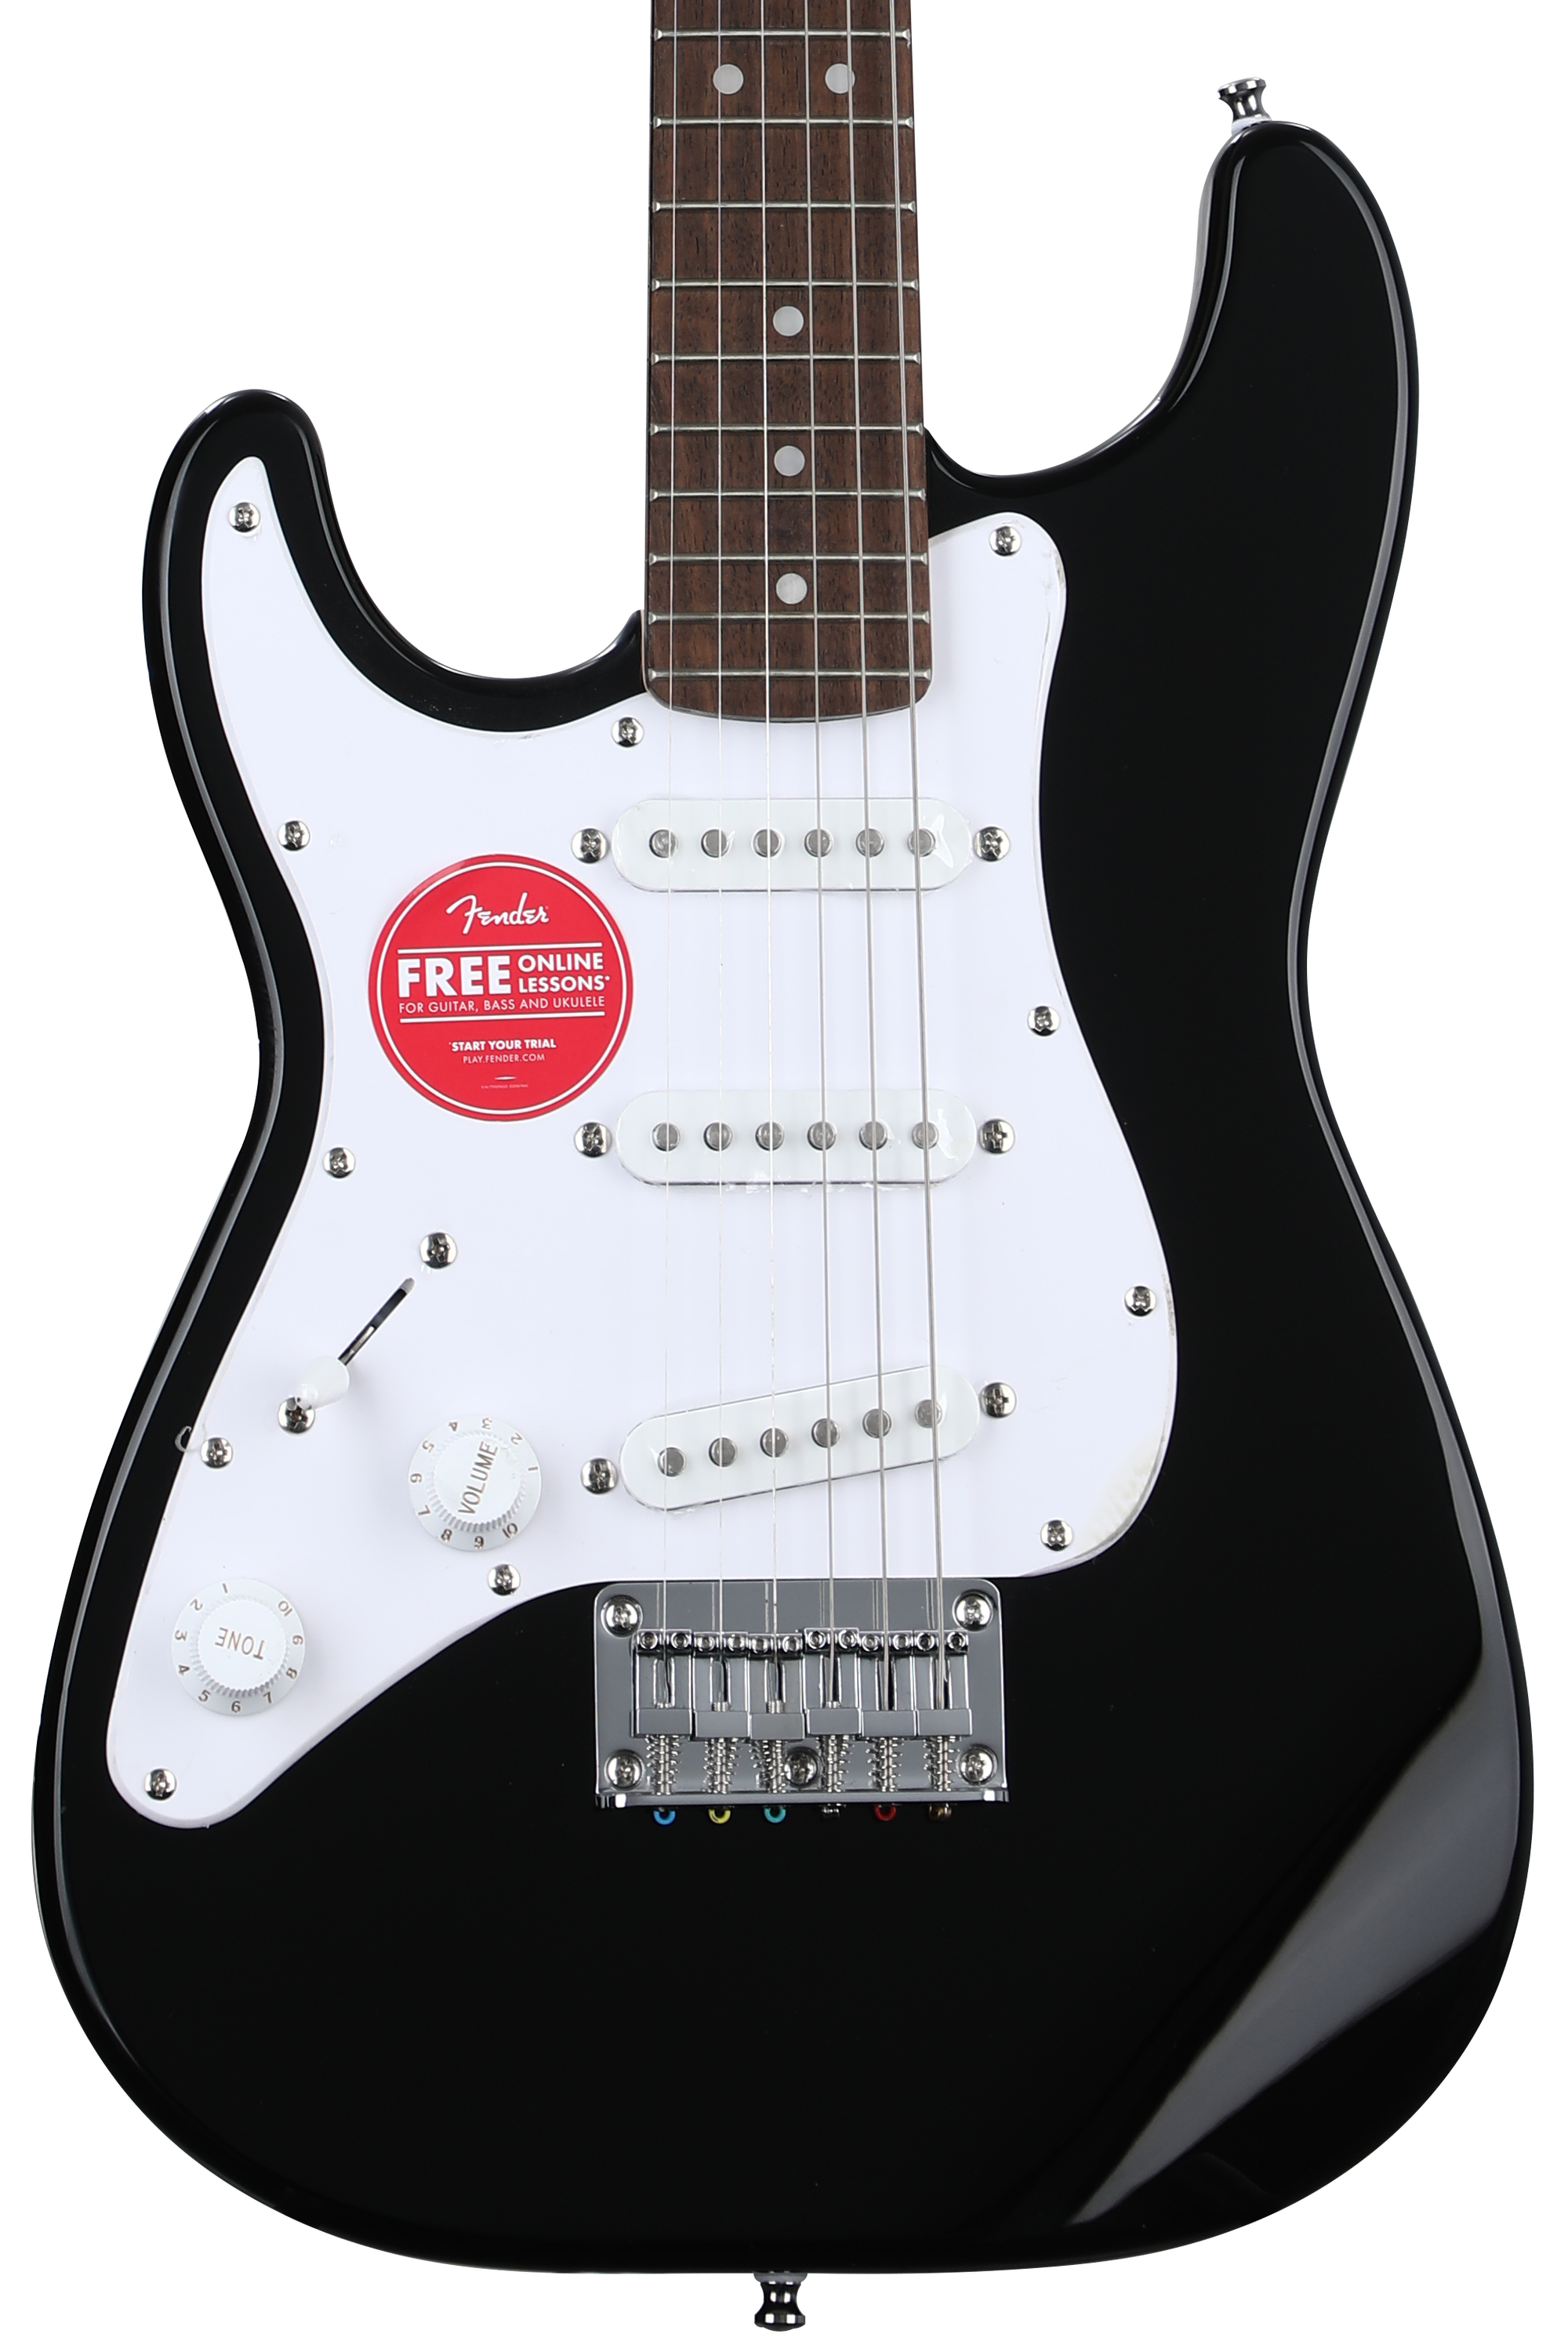 Bundled Item: Squier Mini Stratocaster Left-handed Electric Guitar - Black